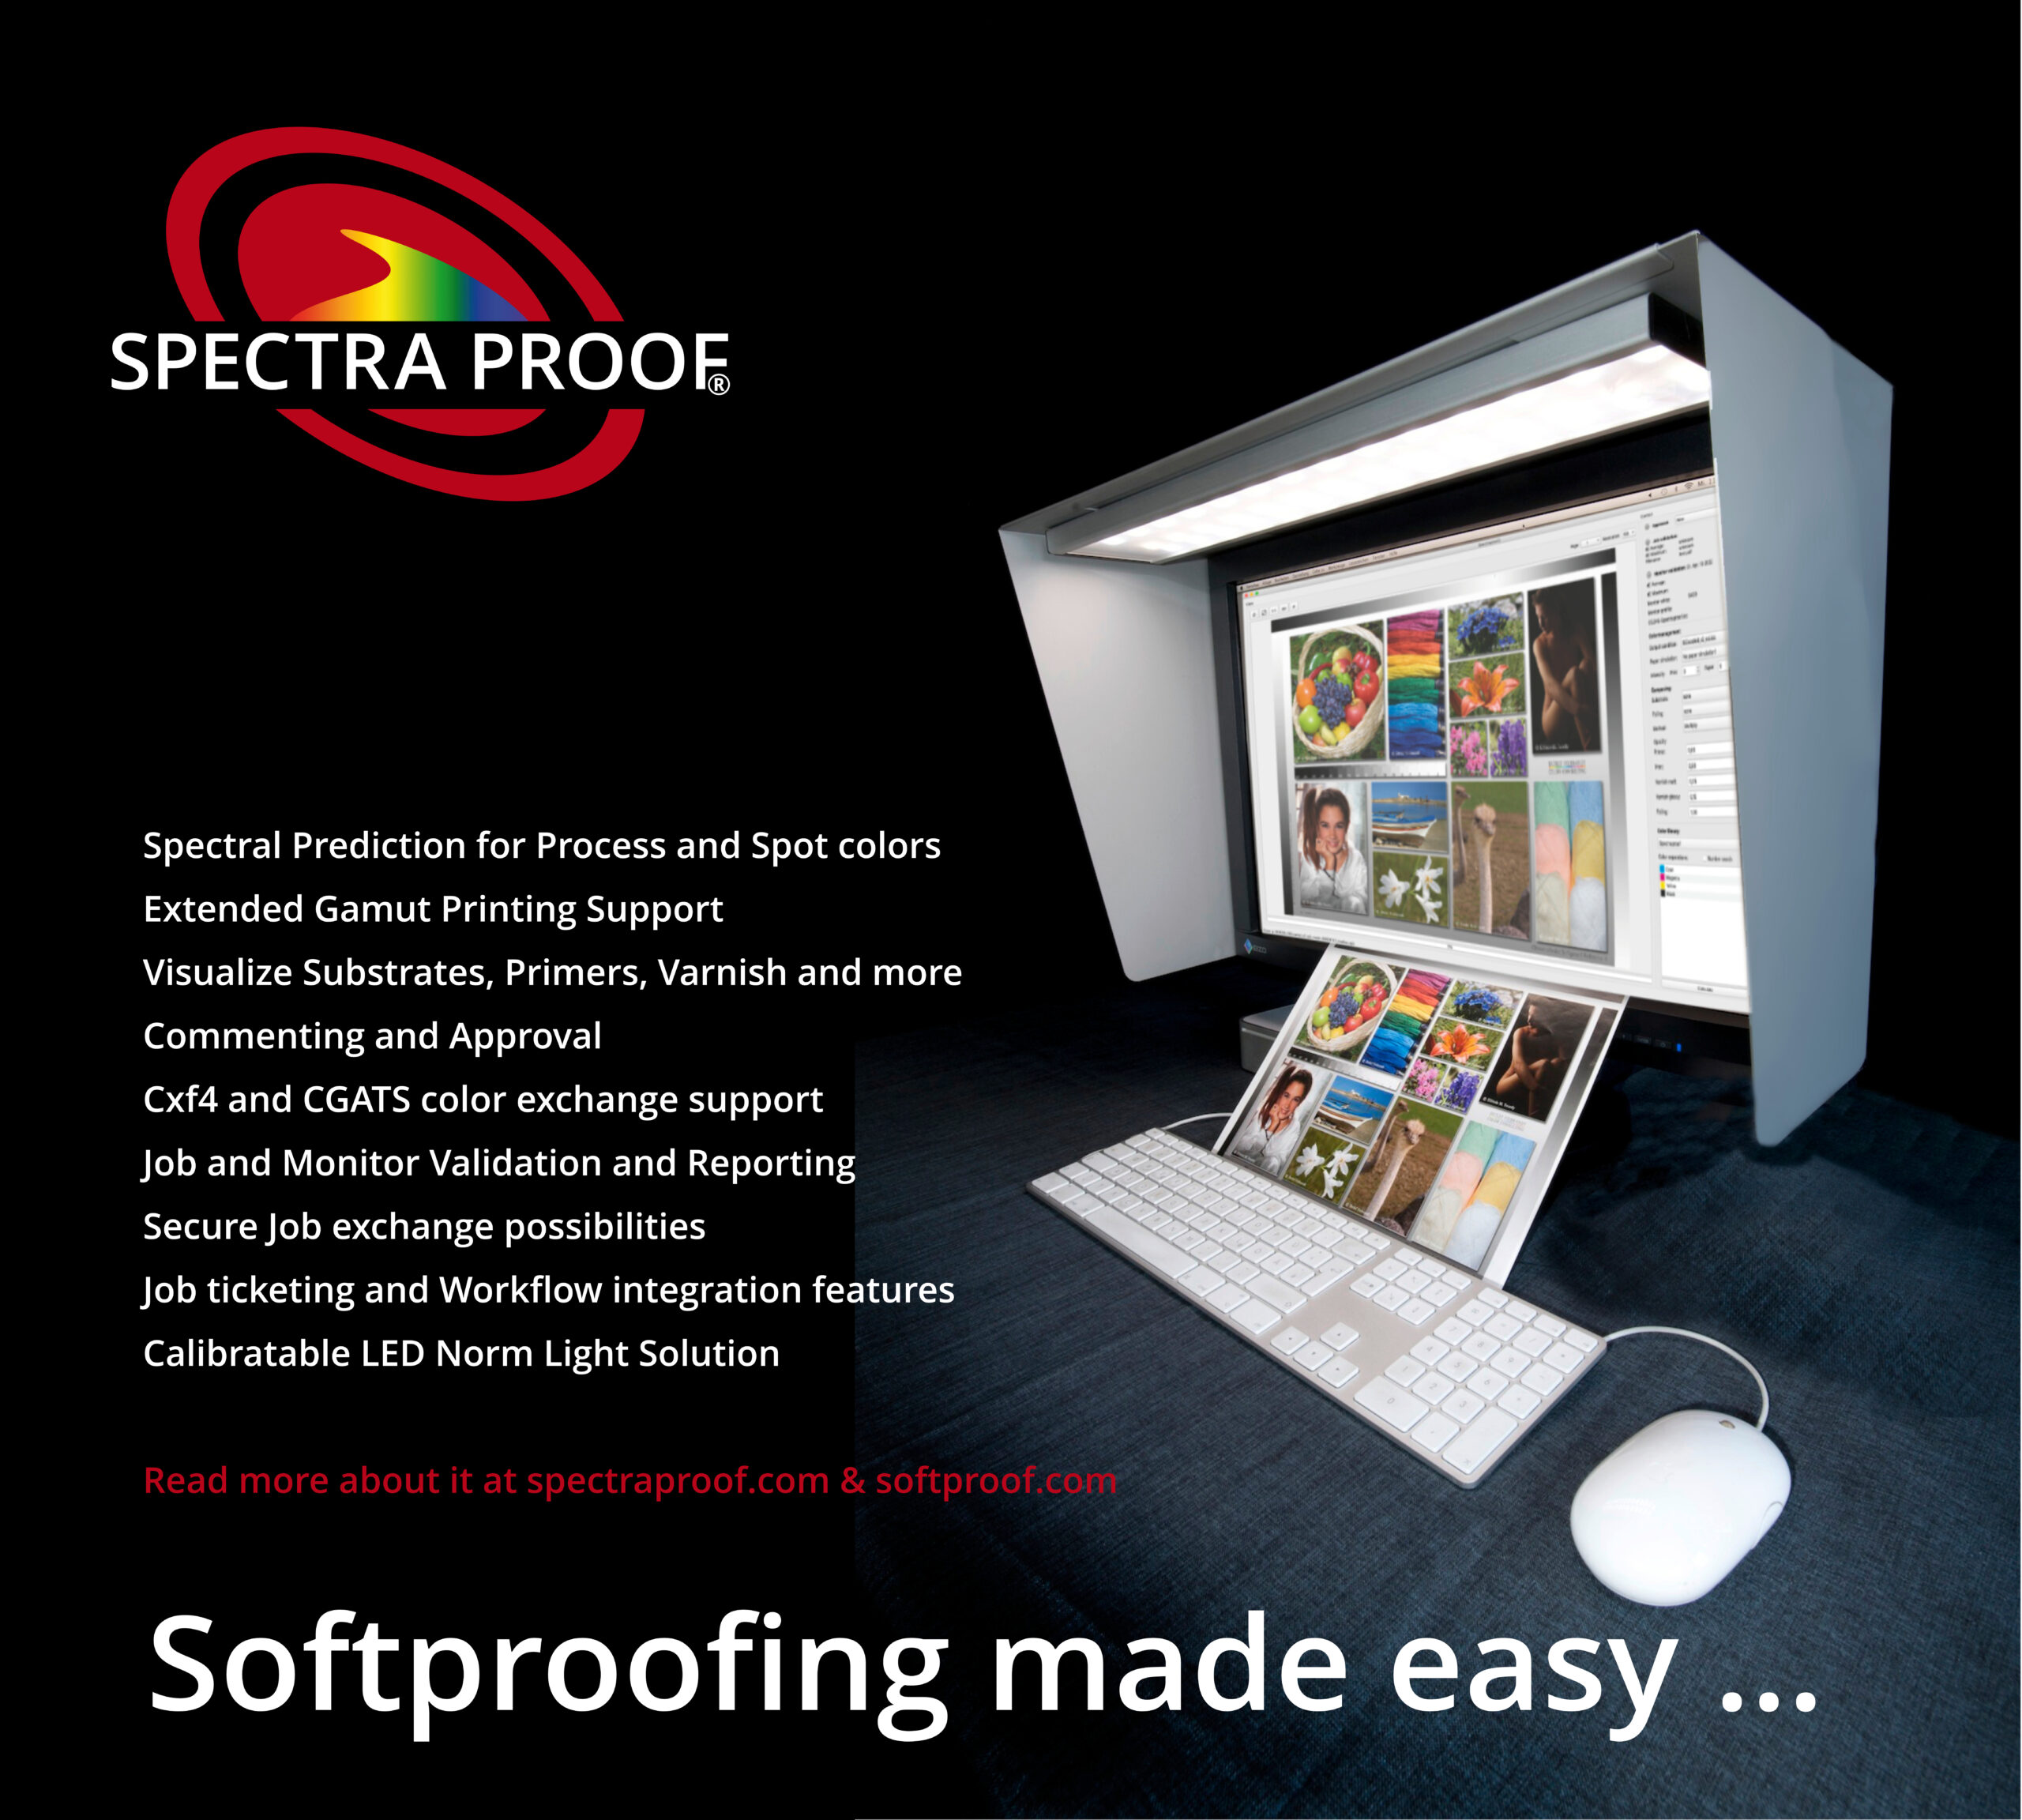 Solution Spectraproof Softproof avec Spectralight, capot, moniteur Softproof : Prédiction spectrale précise pour les couleurs de traitement et les couleurs d'accompagnement